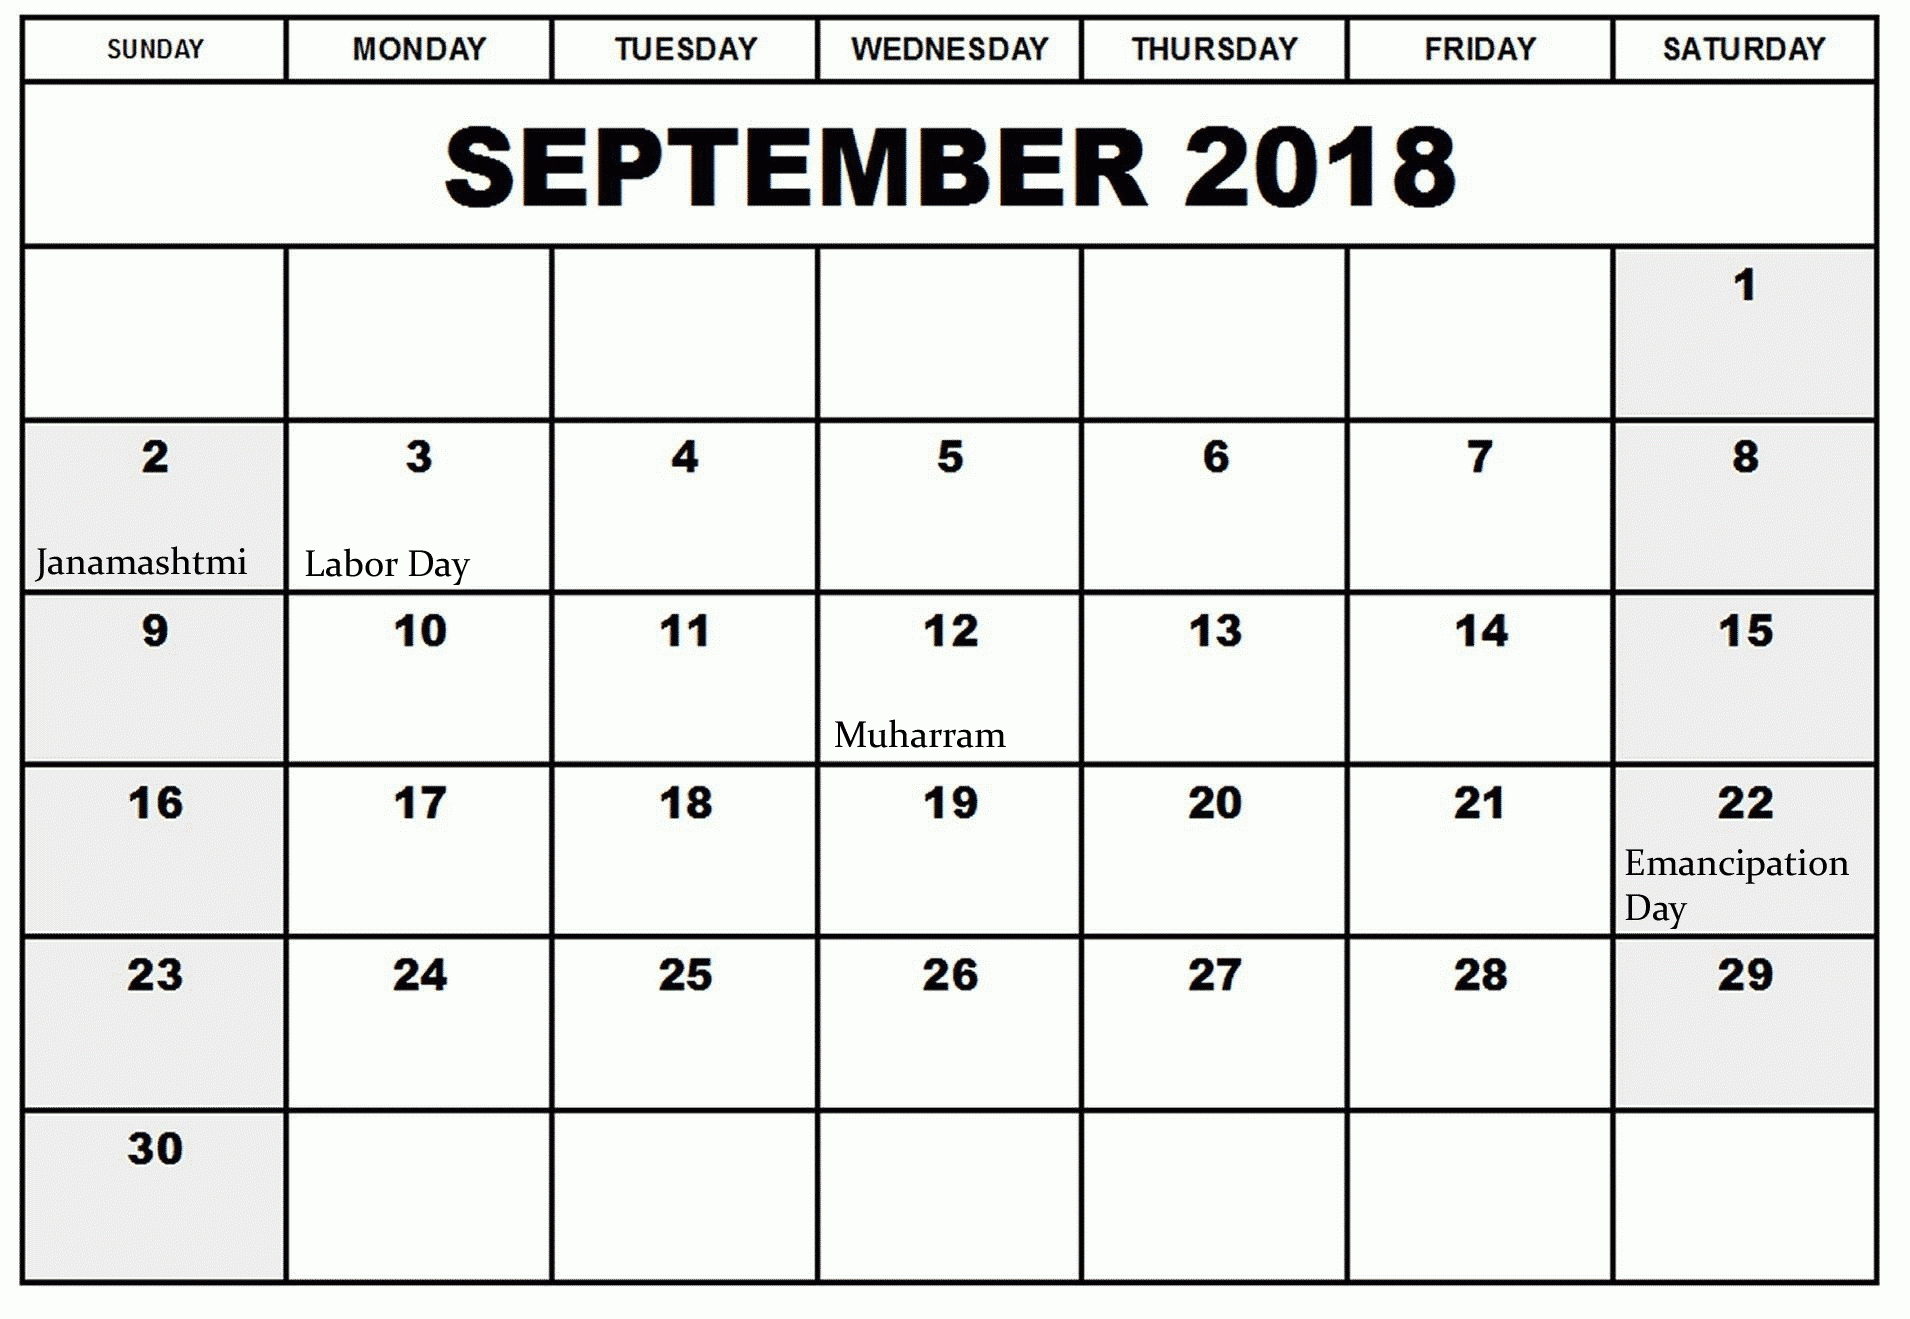 September 2018 Calendar Australia Printable – Paper regarding 2018 Calendar Australia Printable